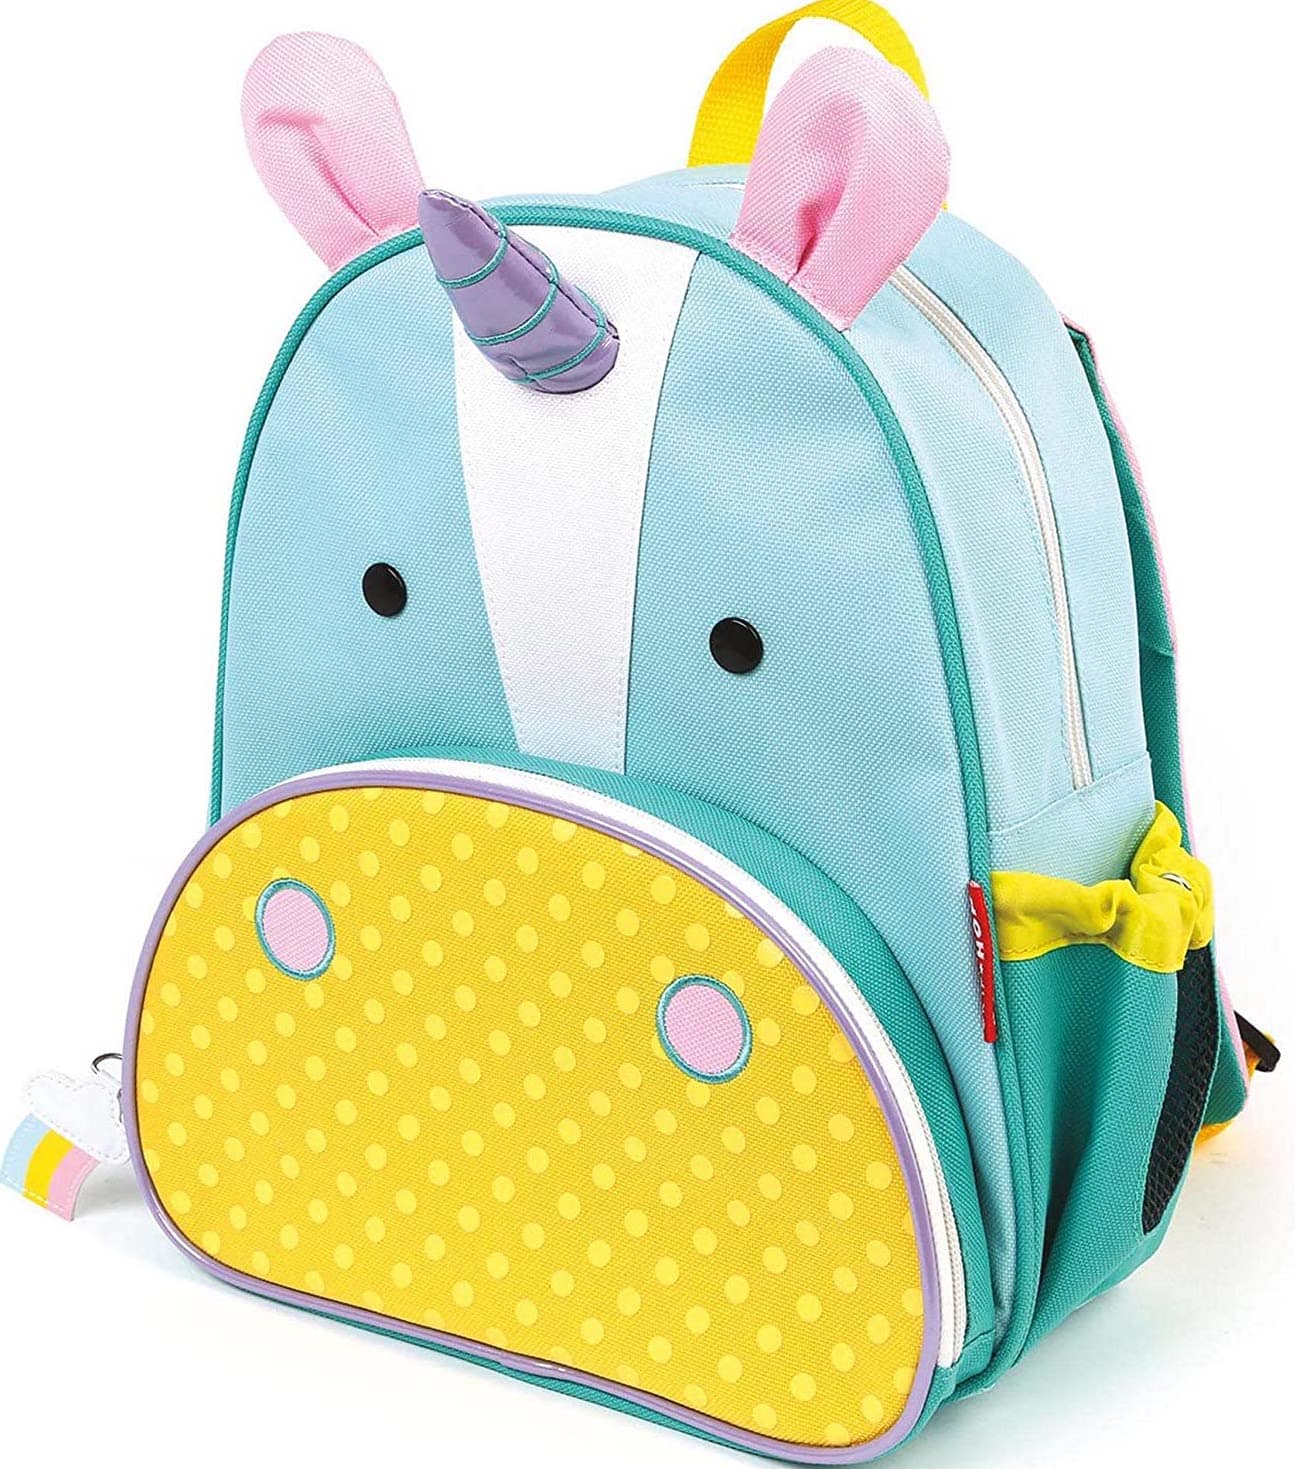 Unicorn kids backpack 